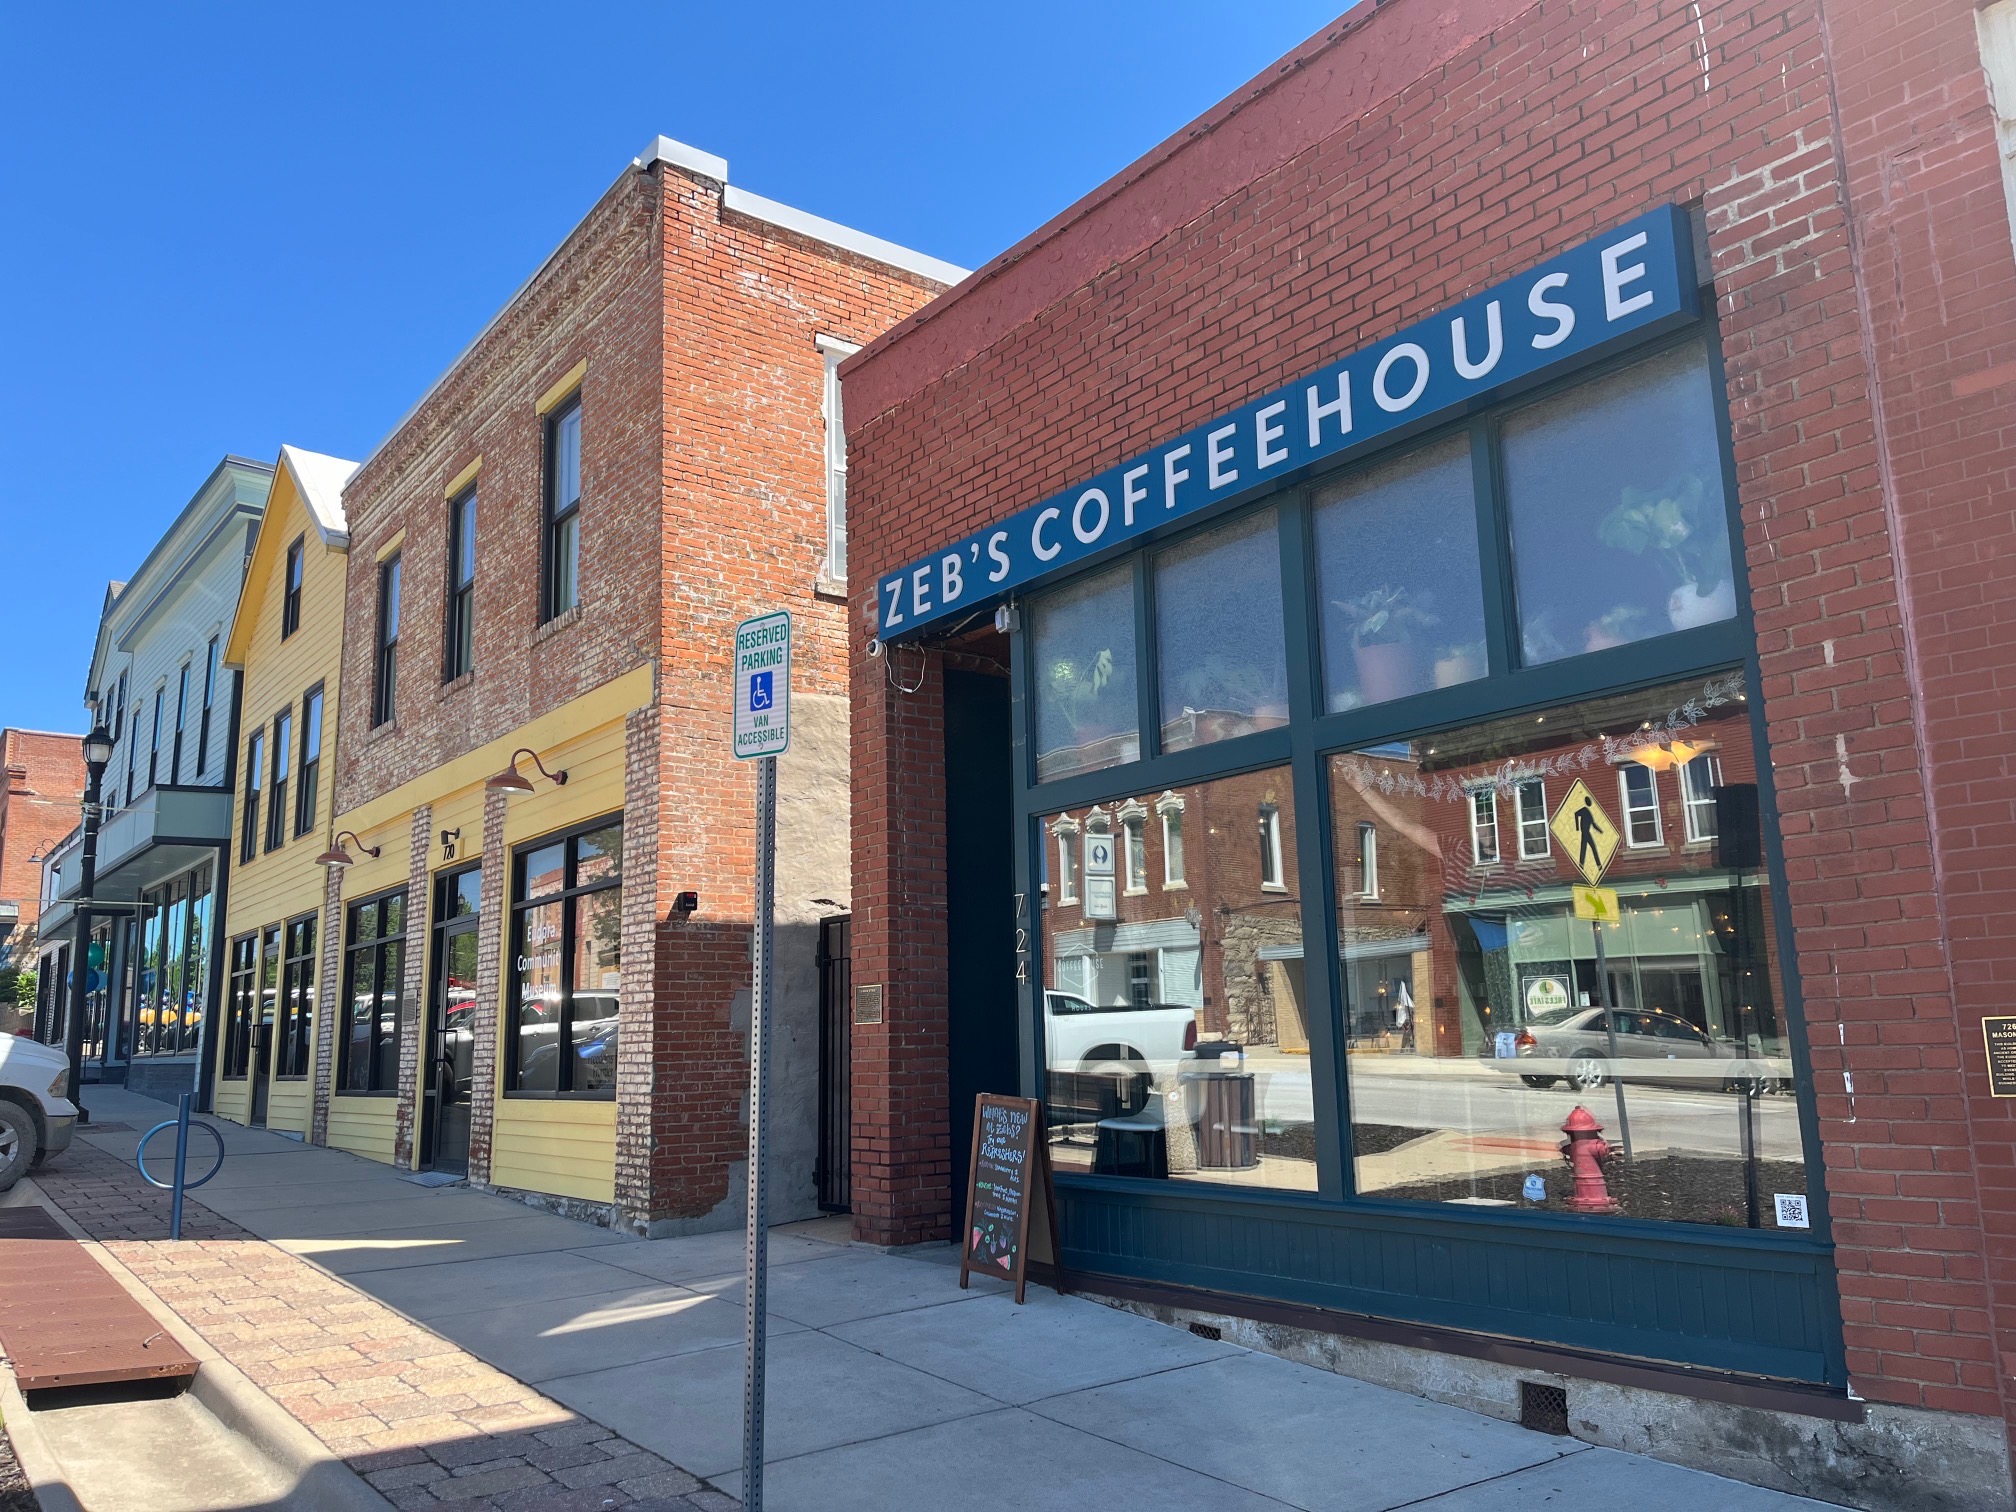 Zeb's coffeeshop in Eudora Kansas